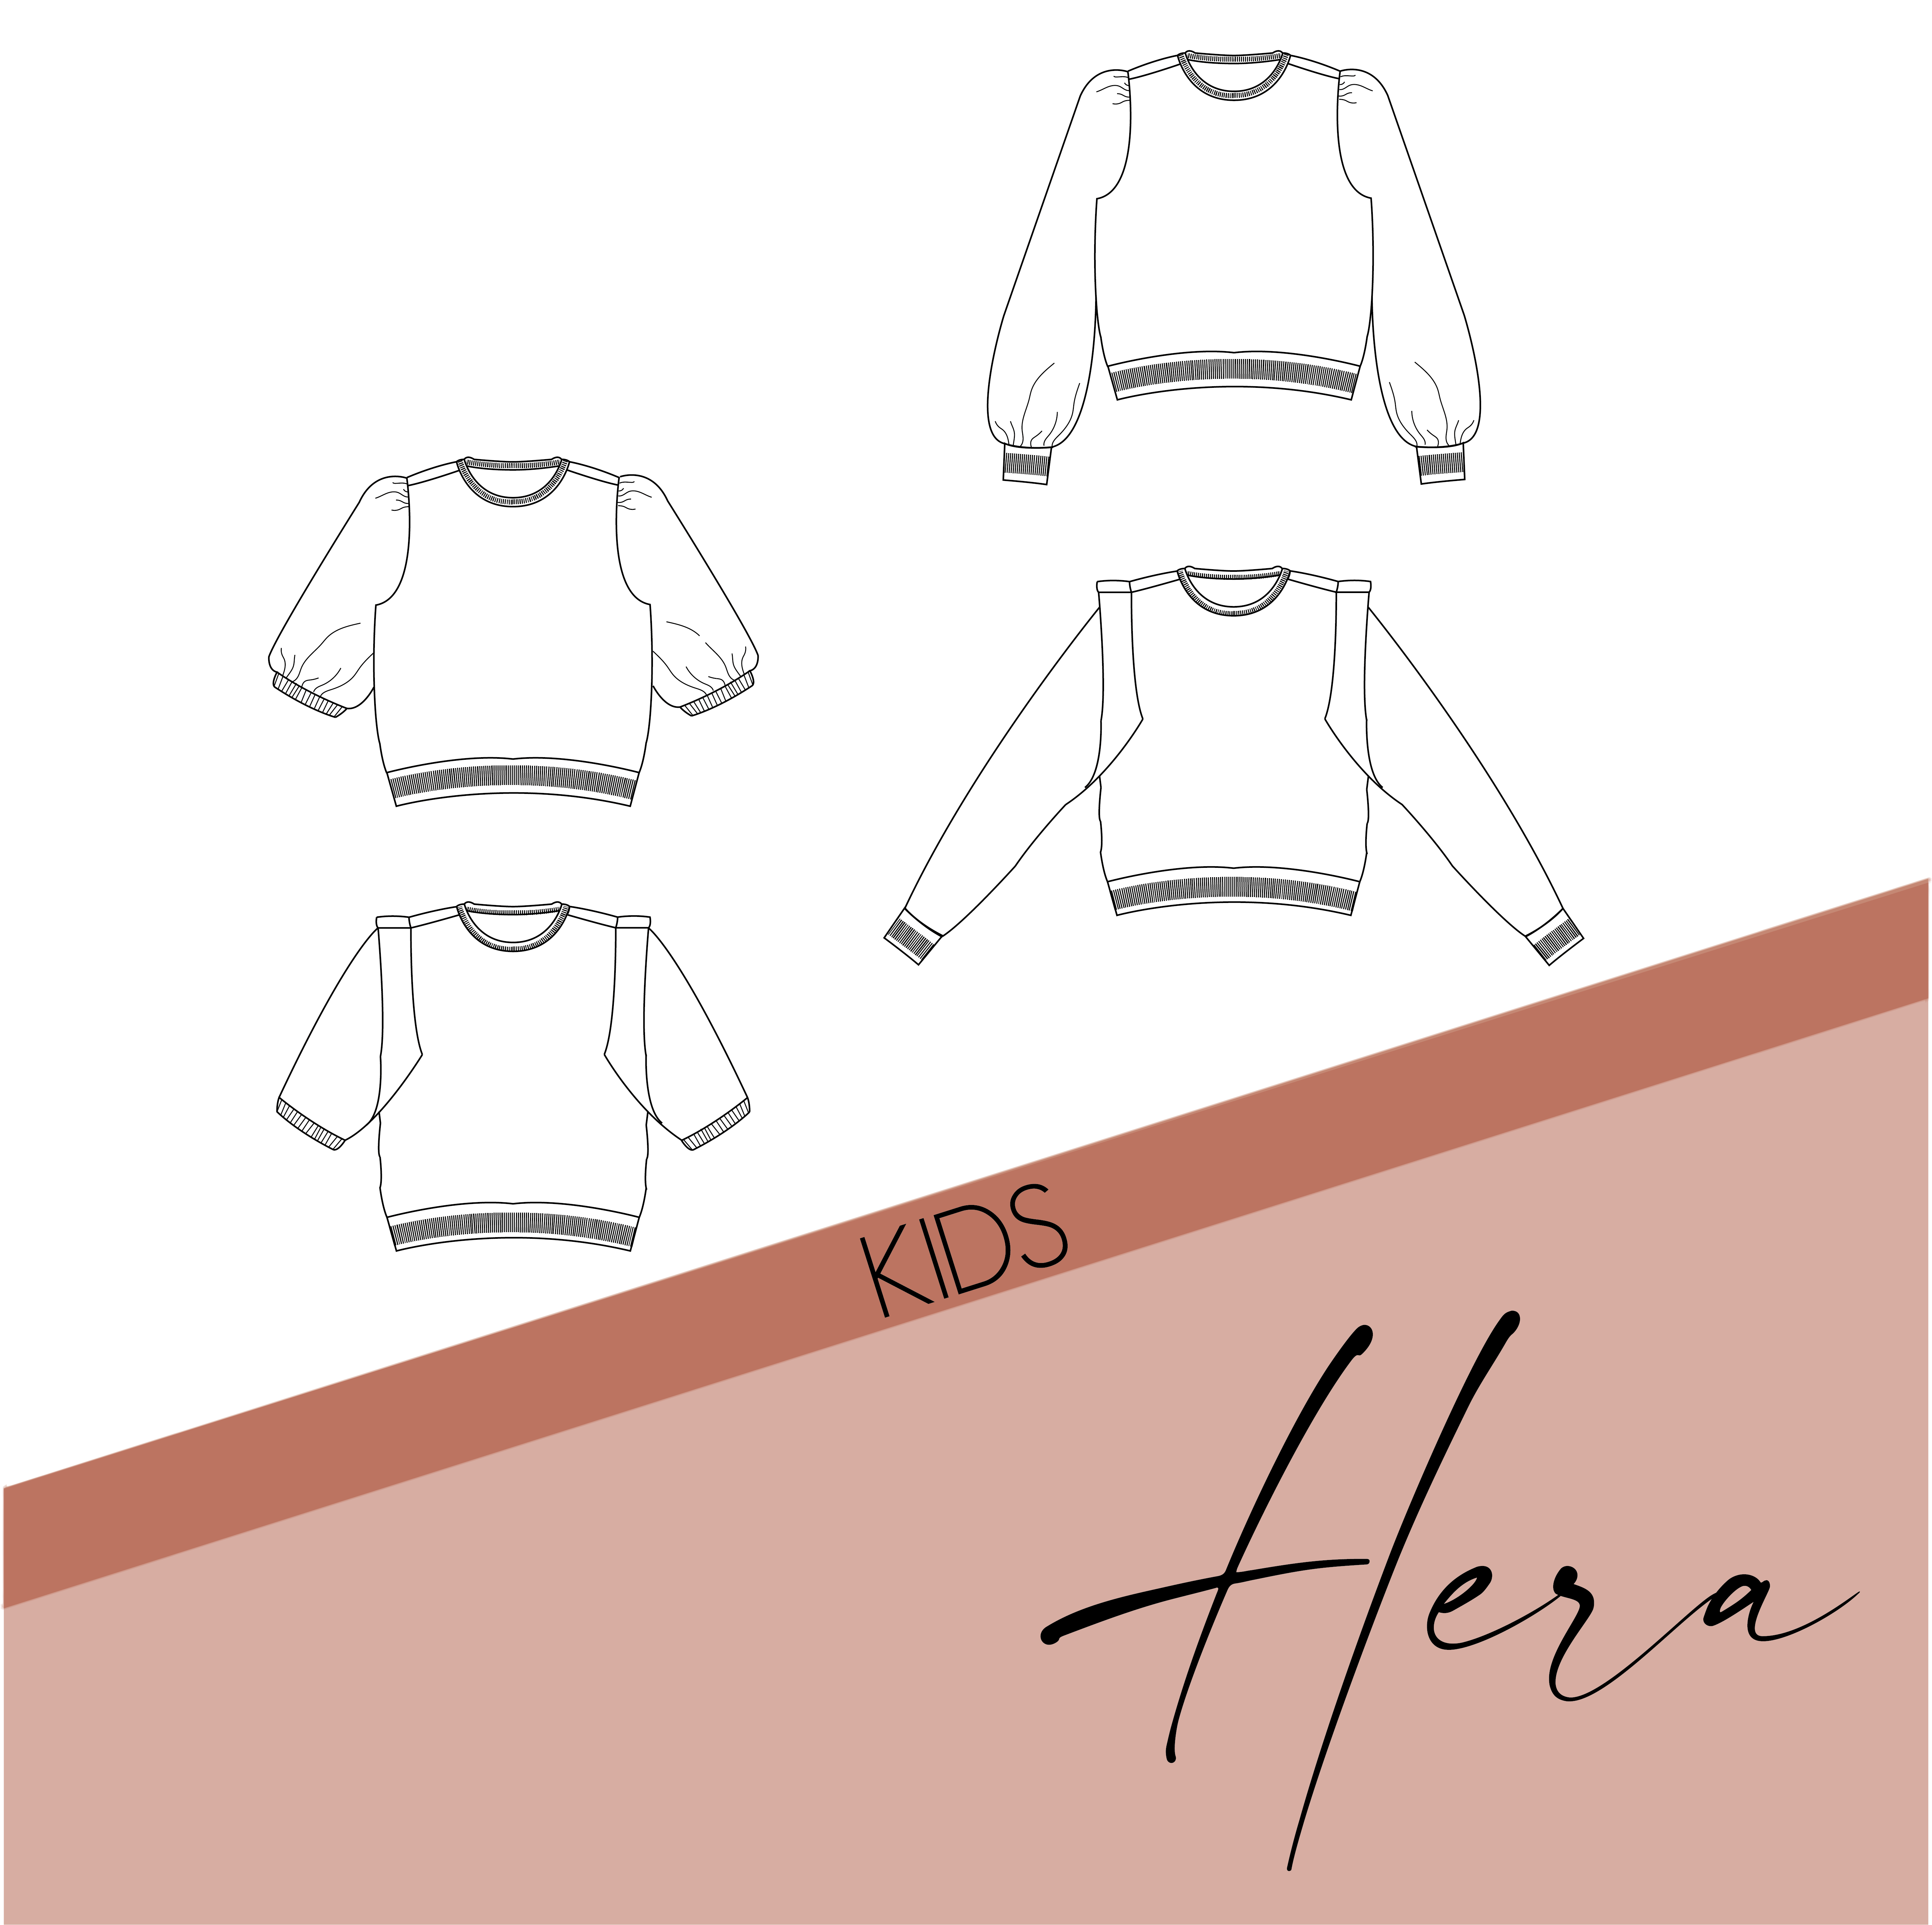 Hera - kids